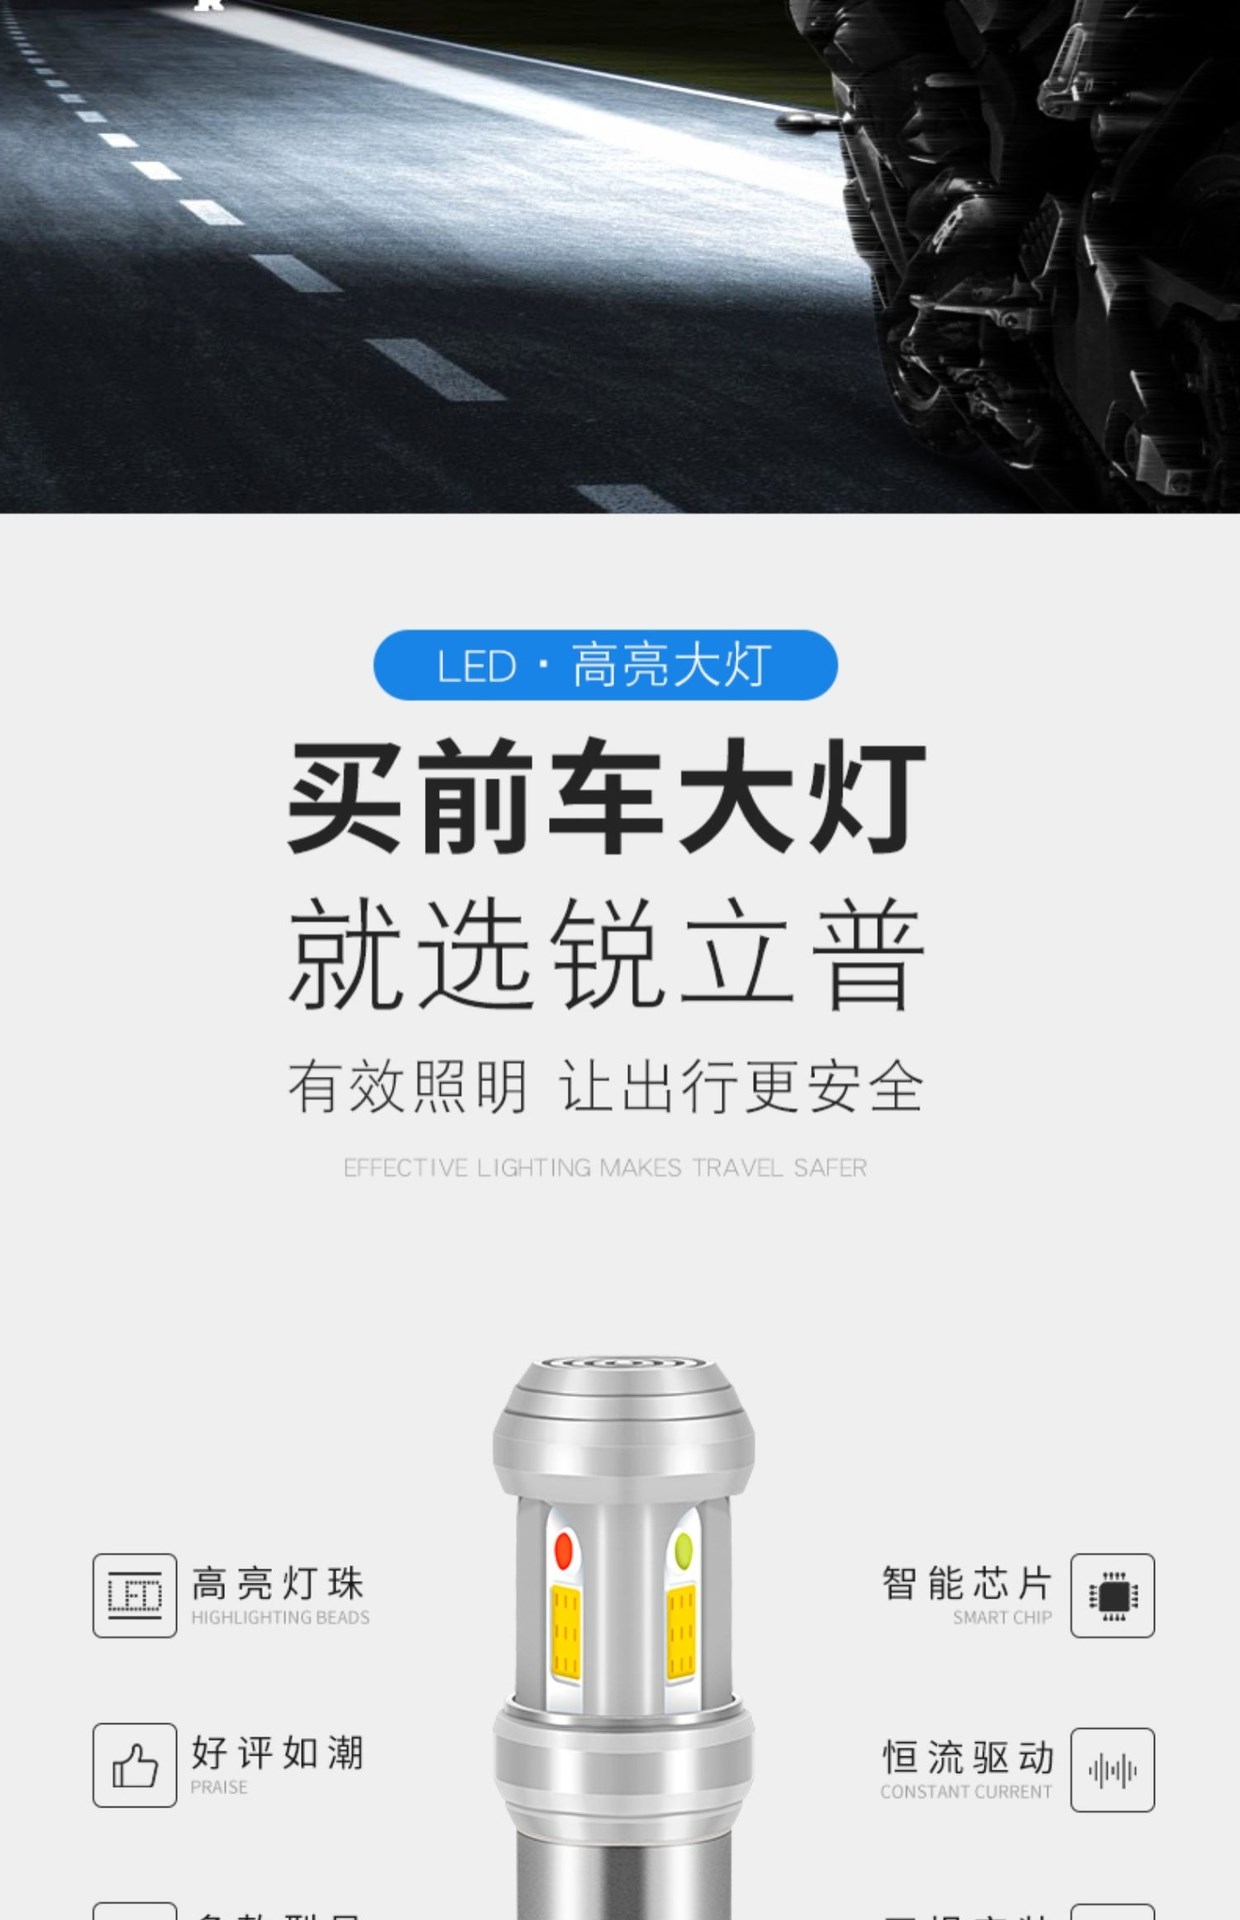 Thích hợp cho bóng đèn xe máy Universiade Liying F1 DY125T-15A trang bị thêm bóng đèn LED nhấp nháy siêu sáng chói - Đèn xe máy